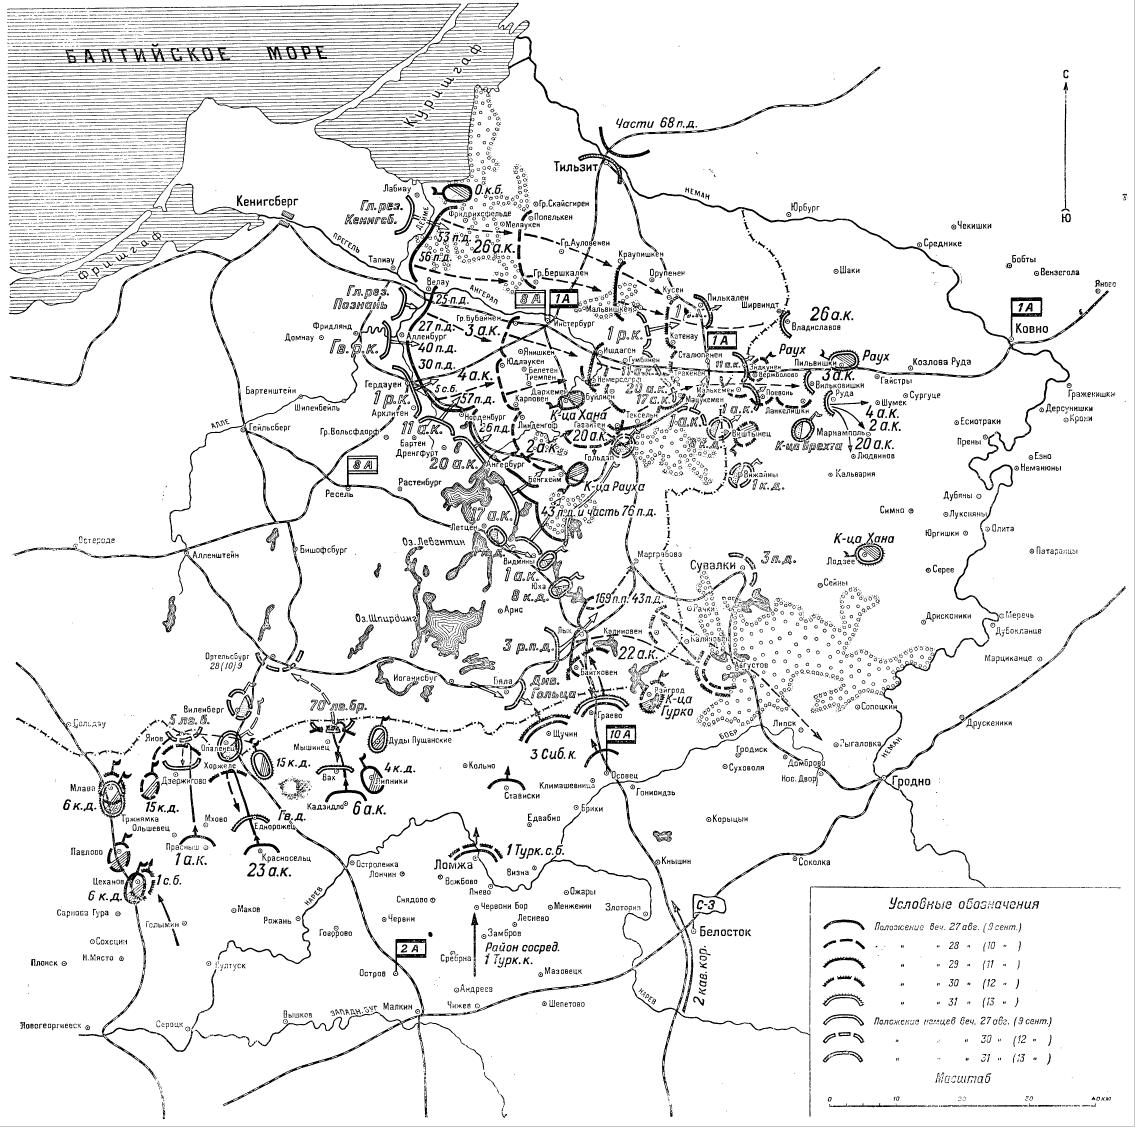 Отход 1-й русской армии из Восточной Пруссии с 9 по 13 сентября 1914